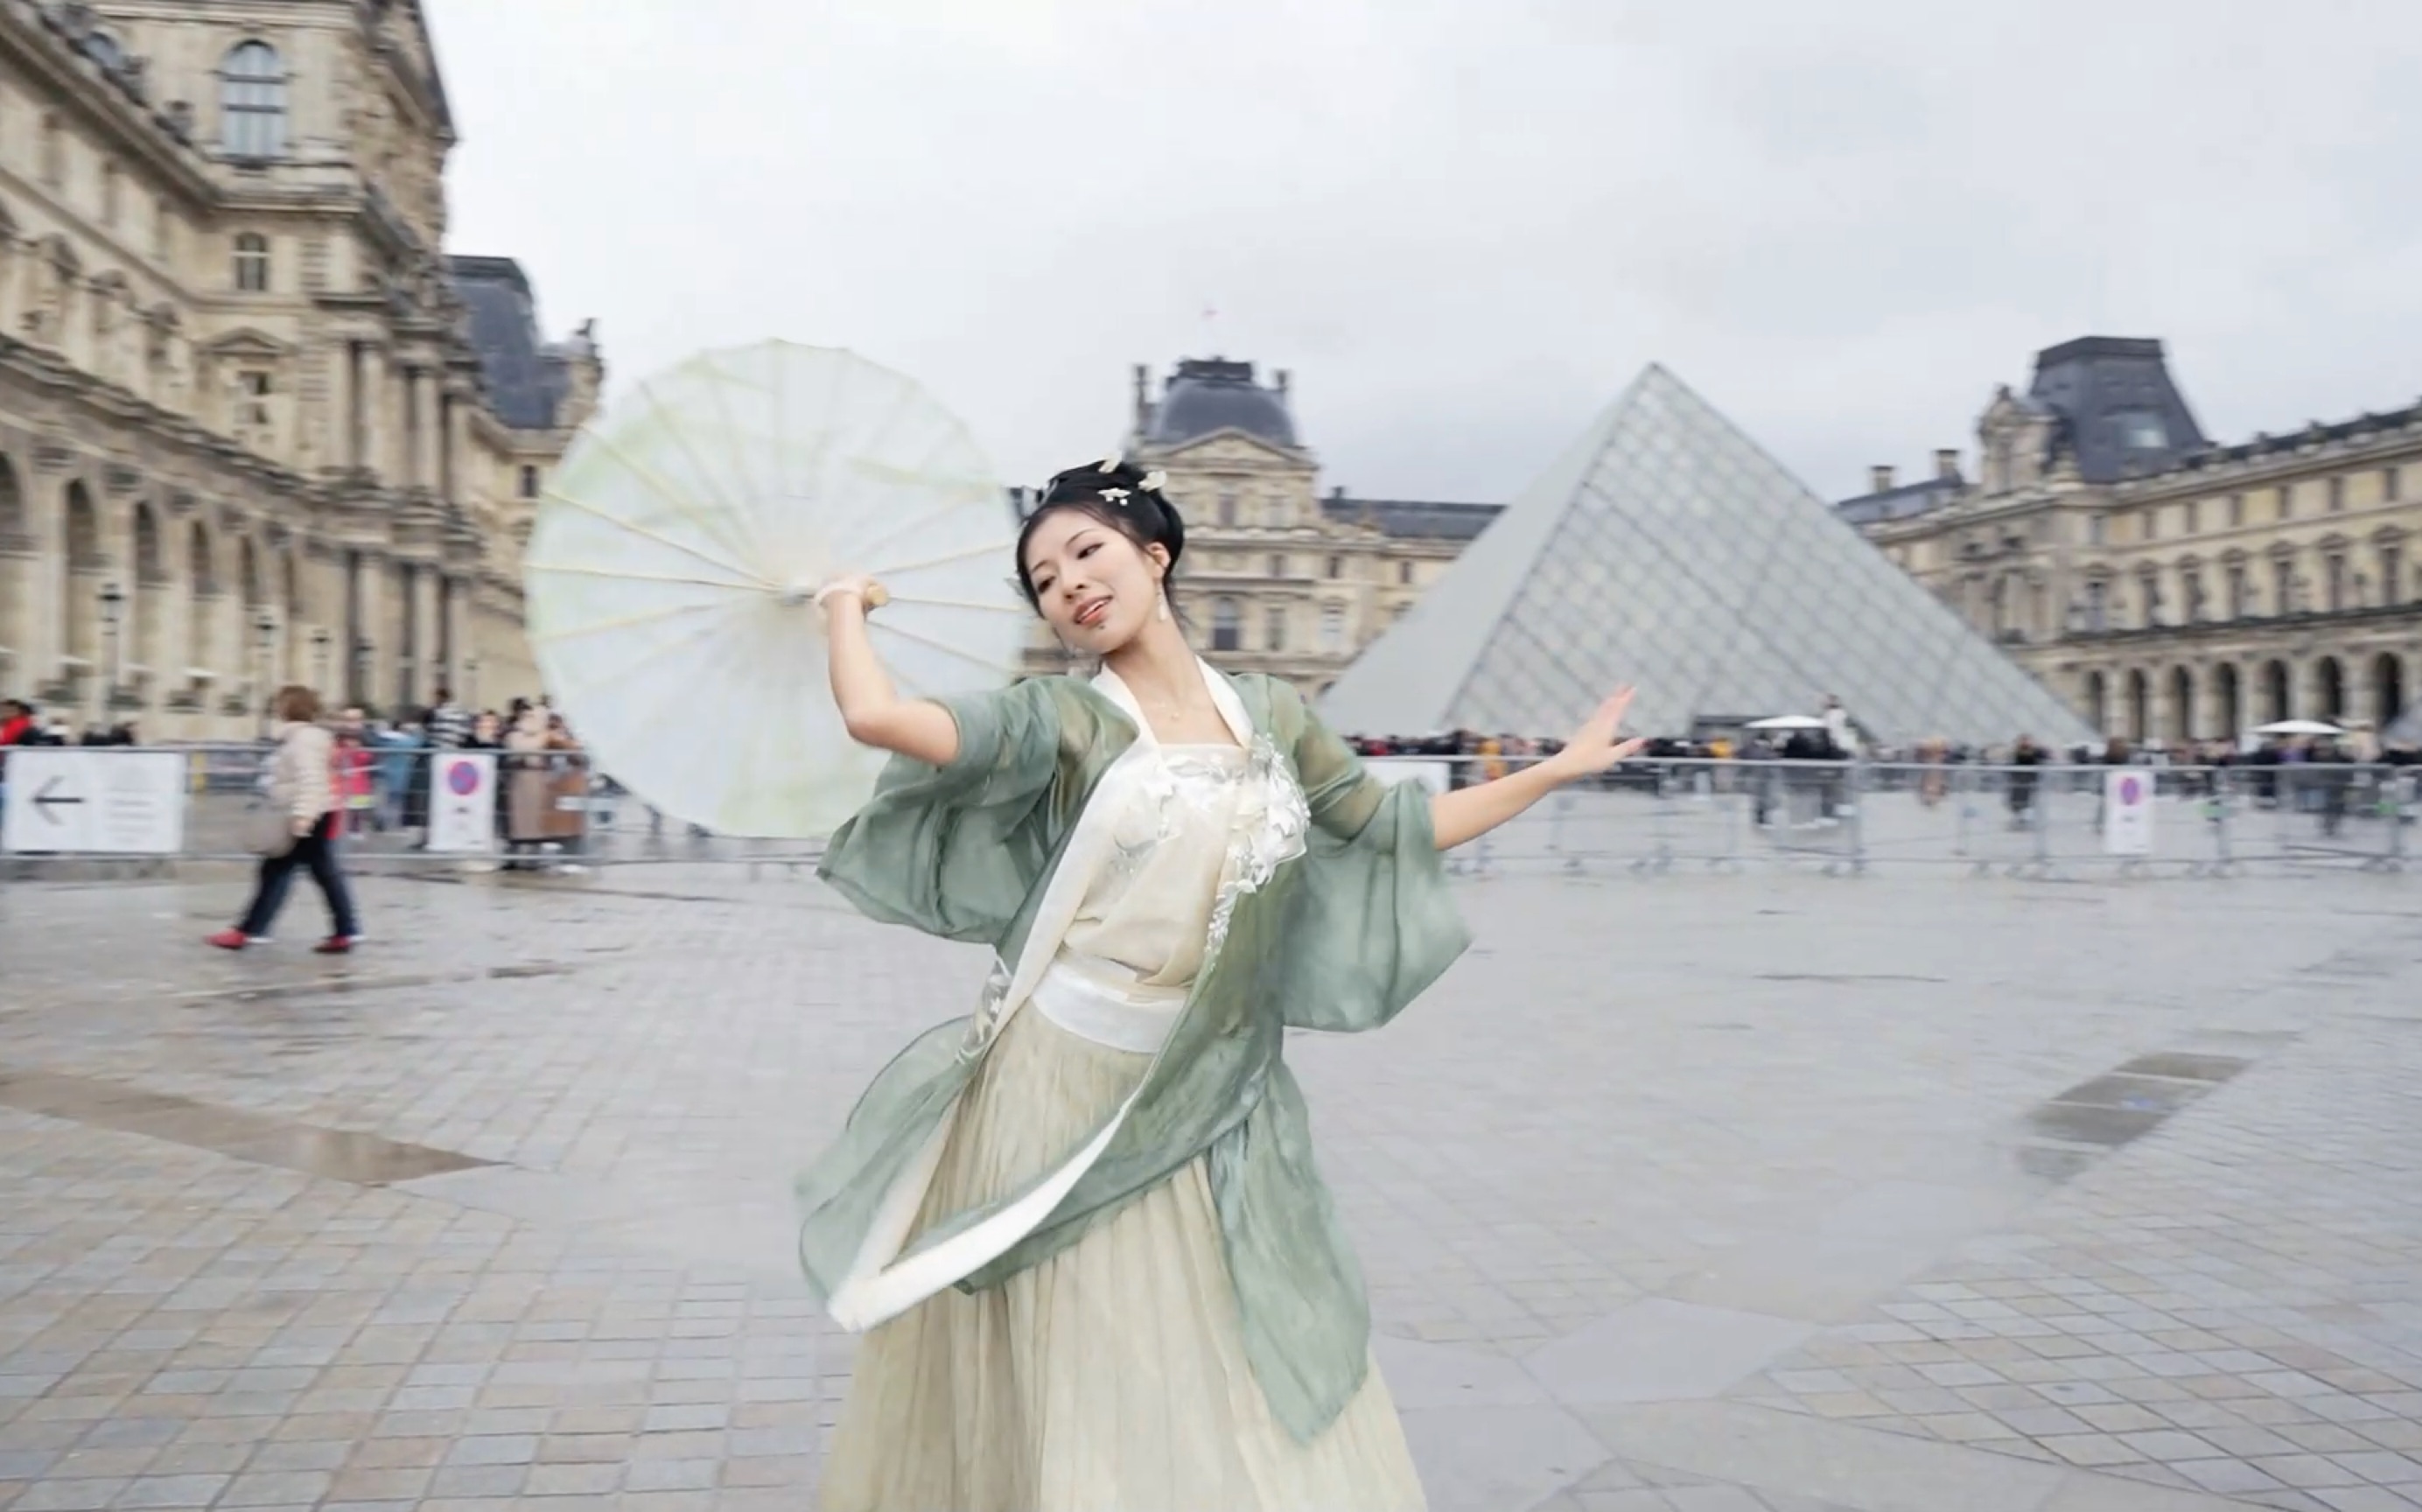 将中国古典舞带到了法国卢浮宫